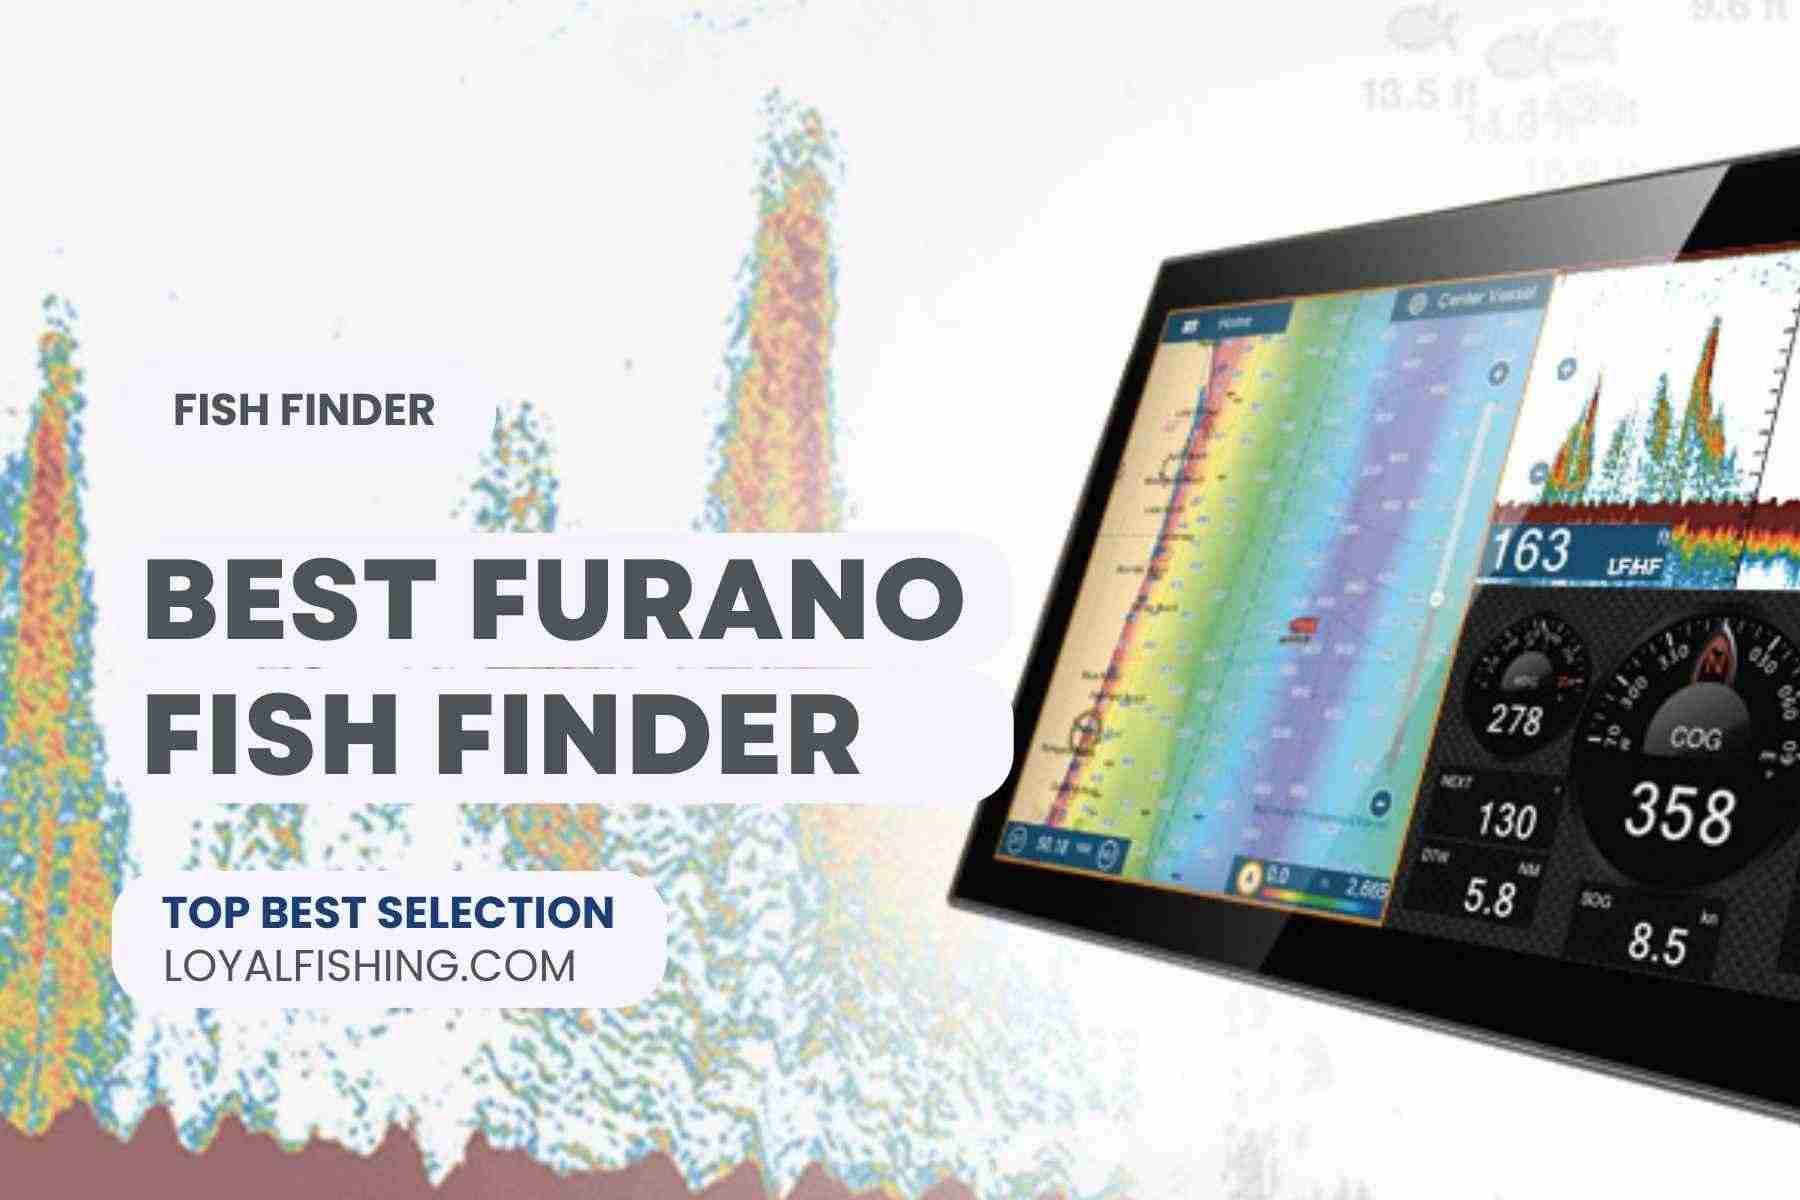 Best Furano Fish Finder